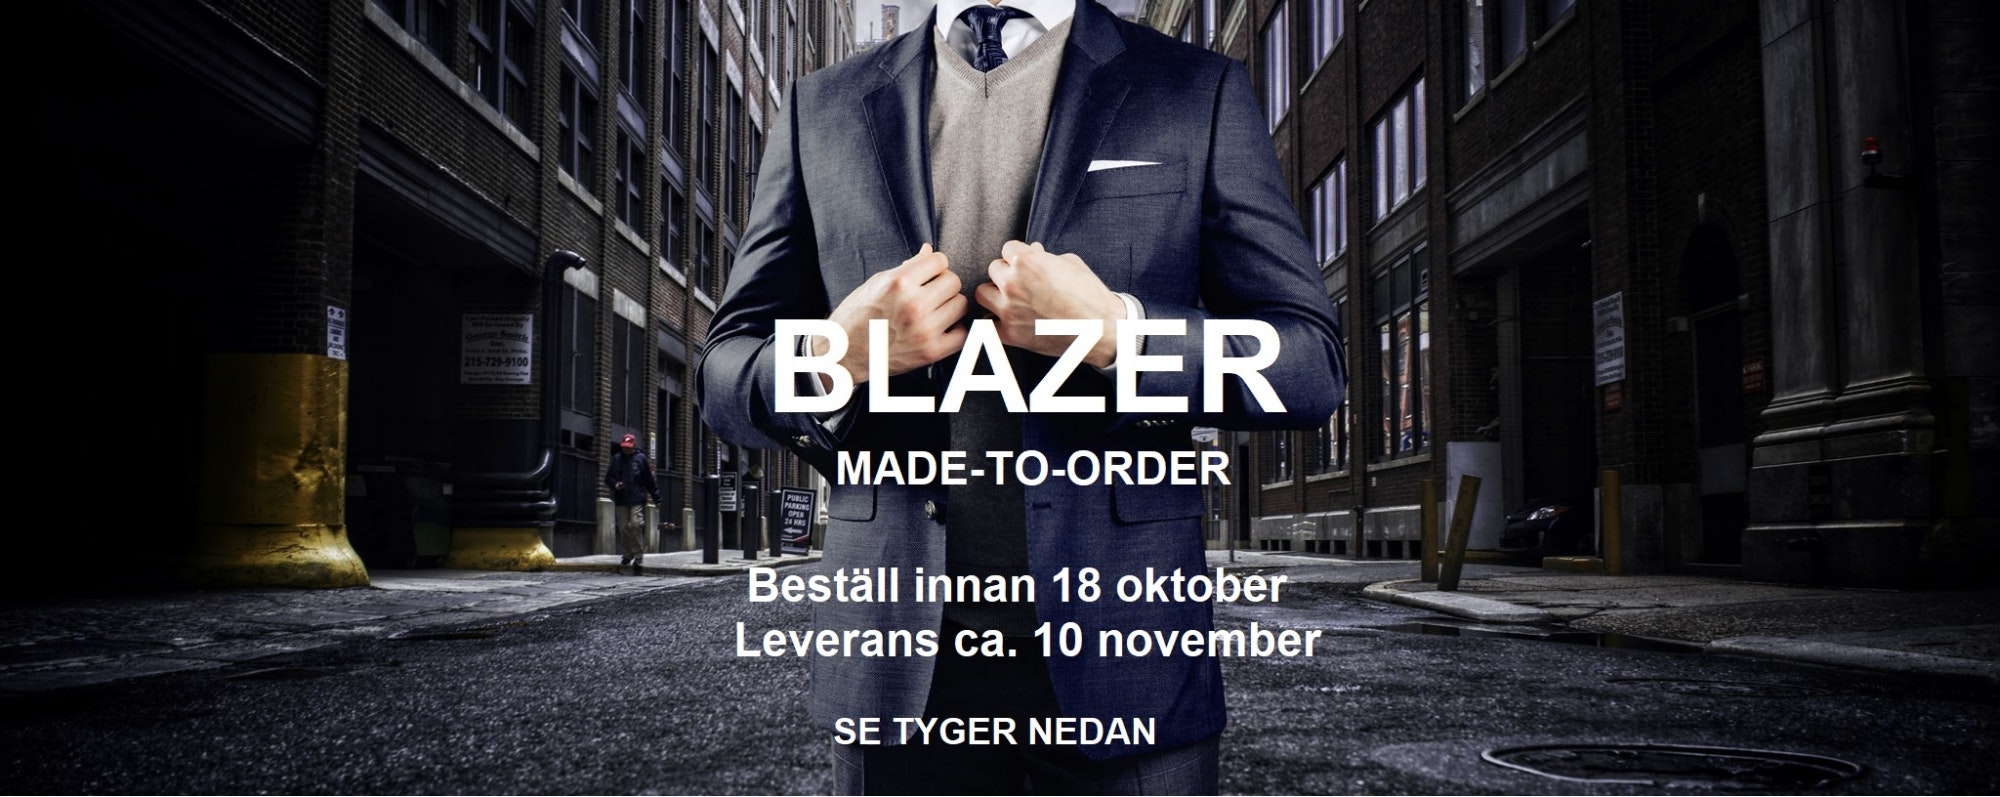 Blazers - Menswear.se